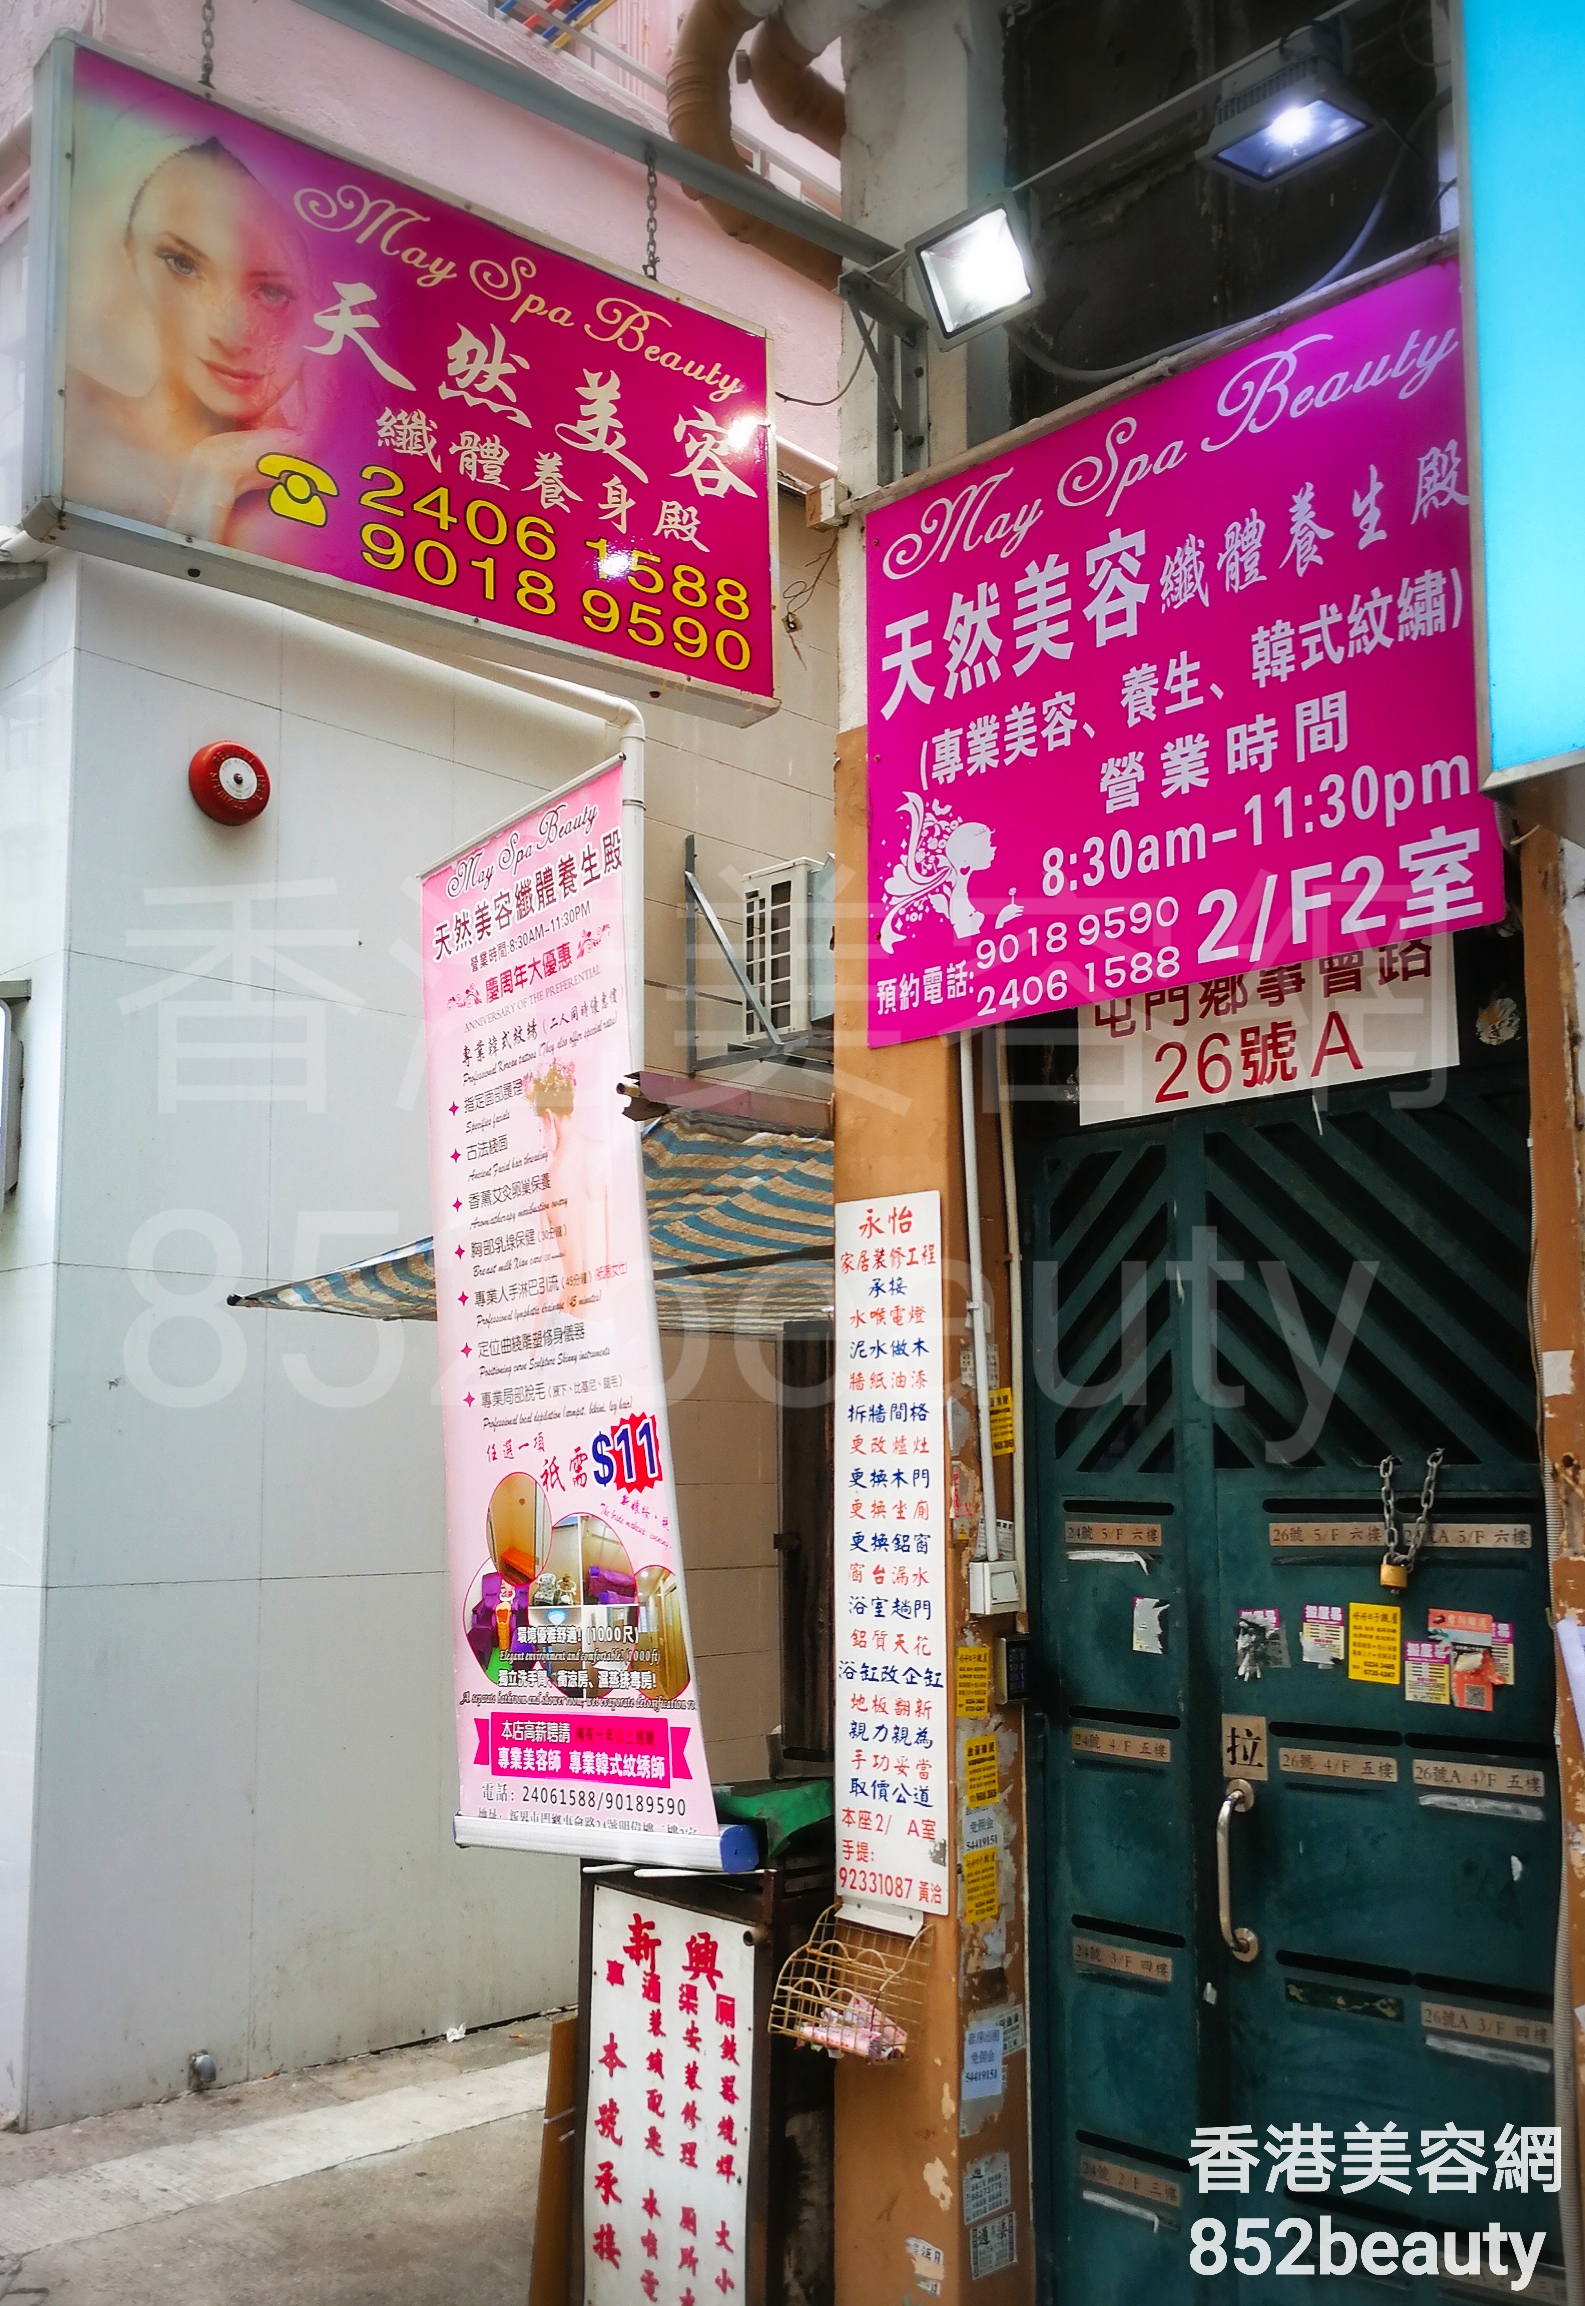 香港美容網 Hong Kong Beauty Salon 美容院 / 美容師: 天然美容 纖體養身殿